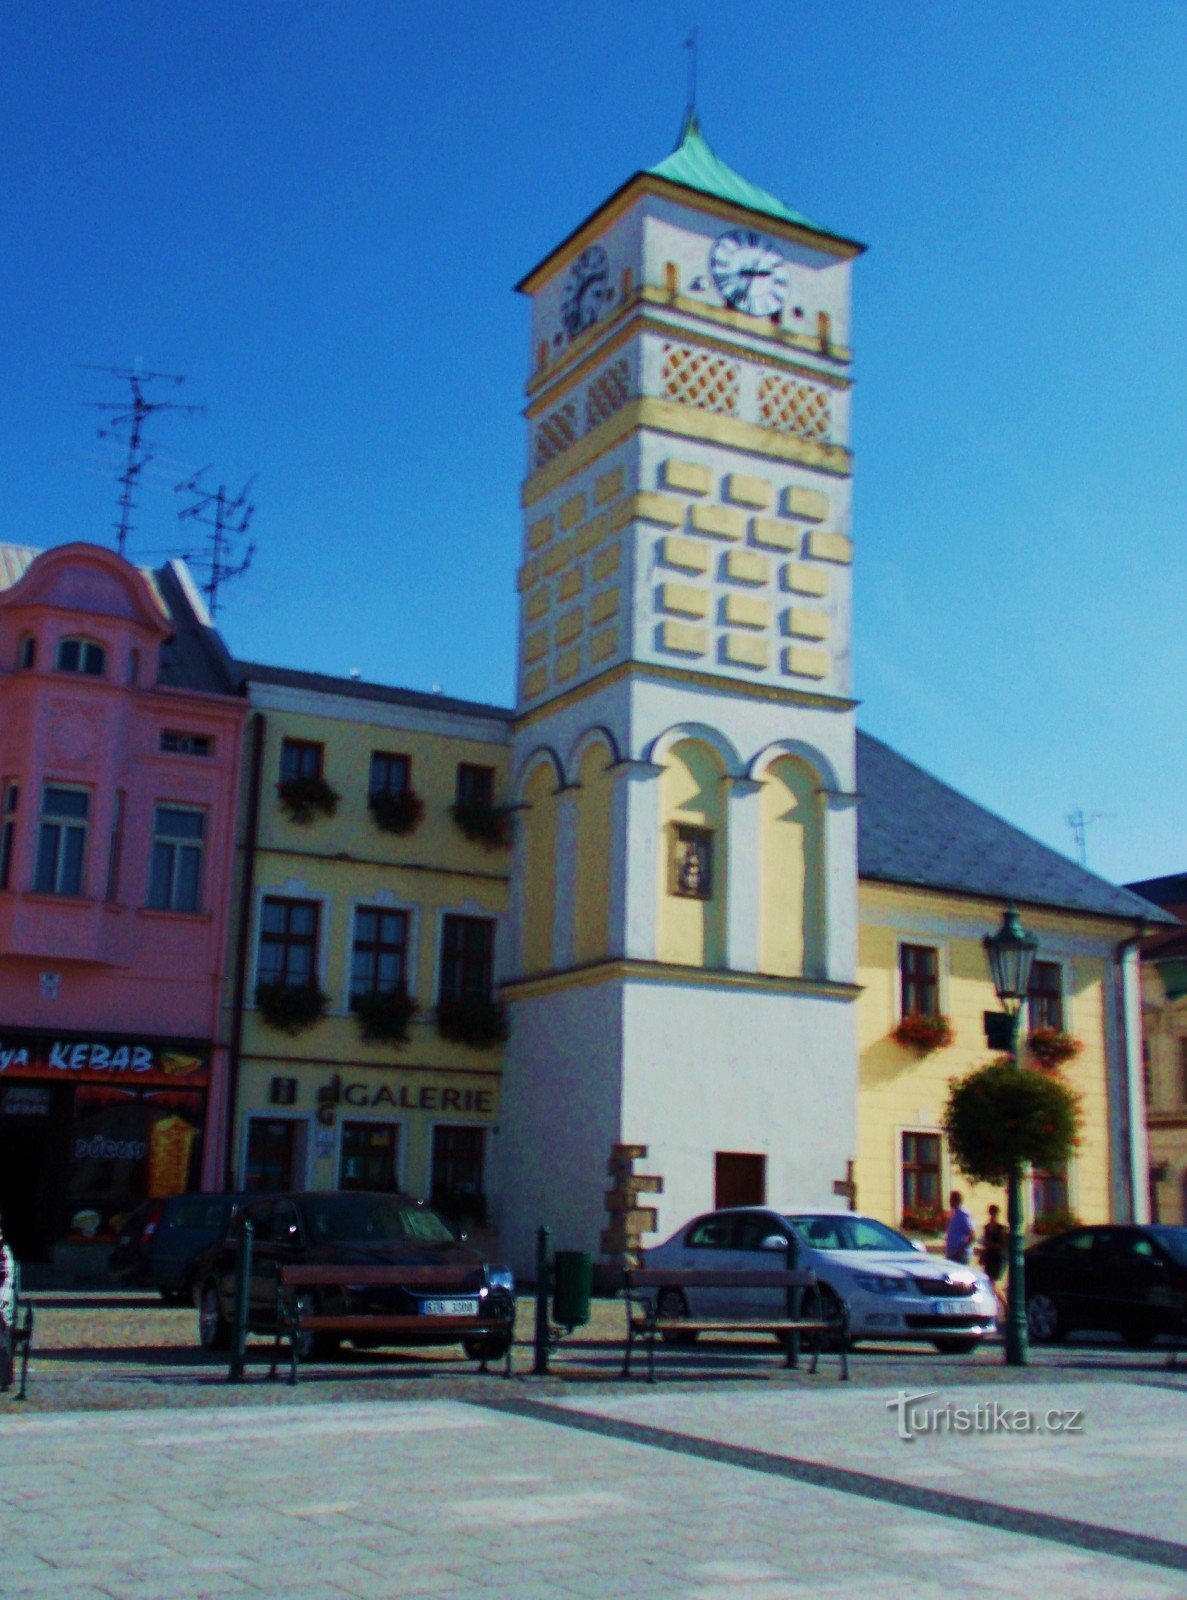 Das Rathausgebäude – die Dominante des Masaryk-Platzes in Karviná